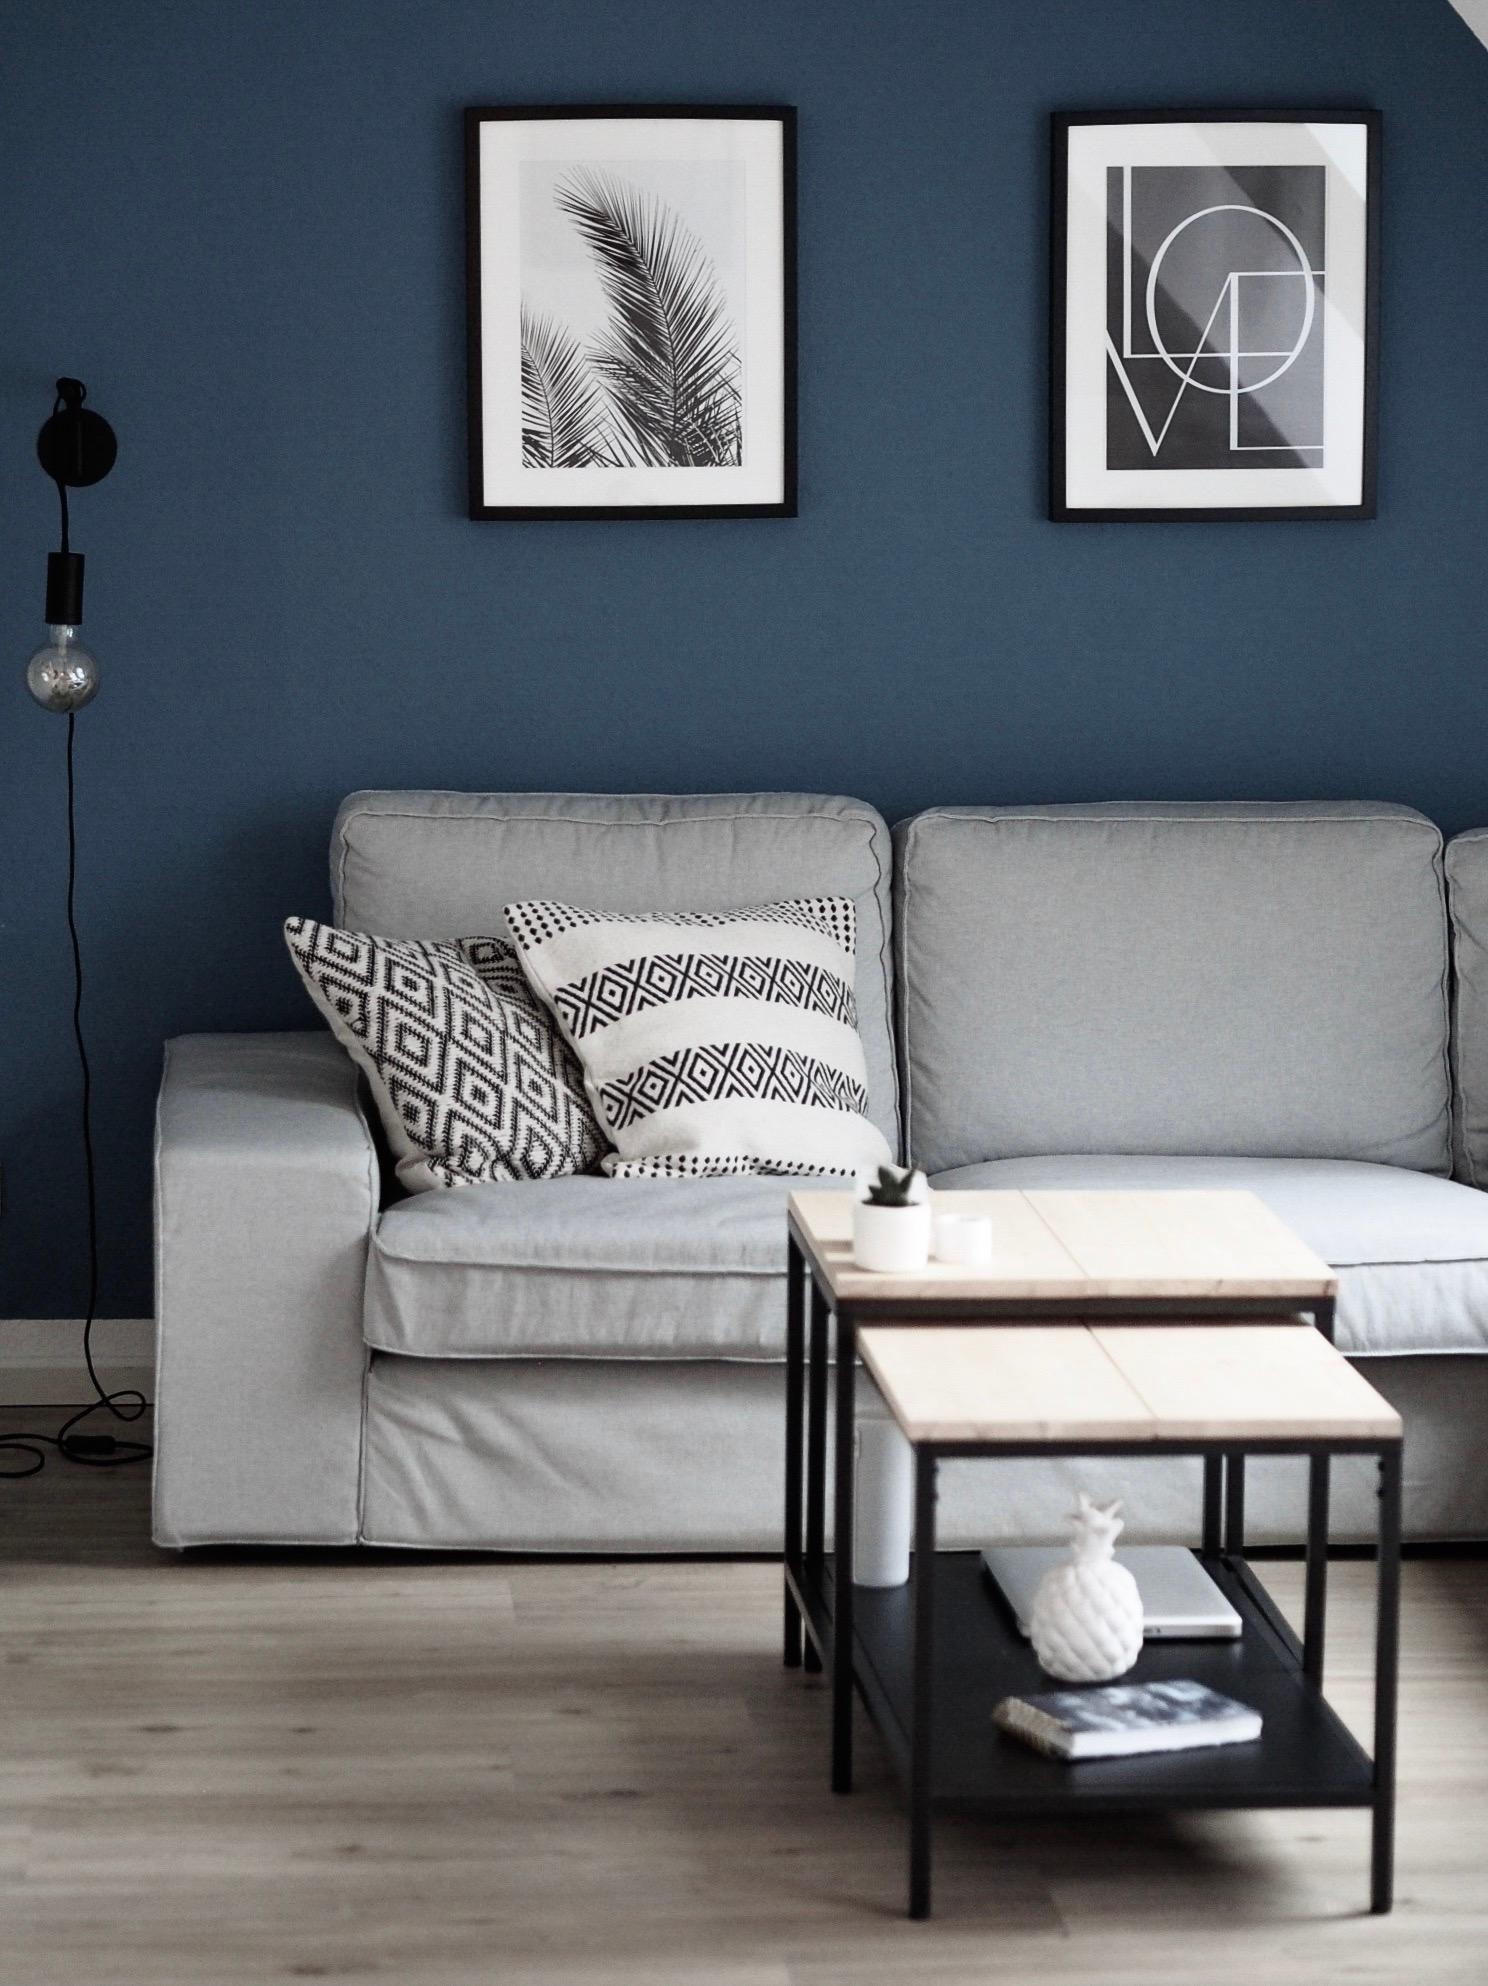 Meine Blaue Wand ist wohl der einzige Farbkleks in meiner Wohnung #scandinavianliving